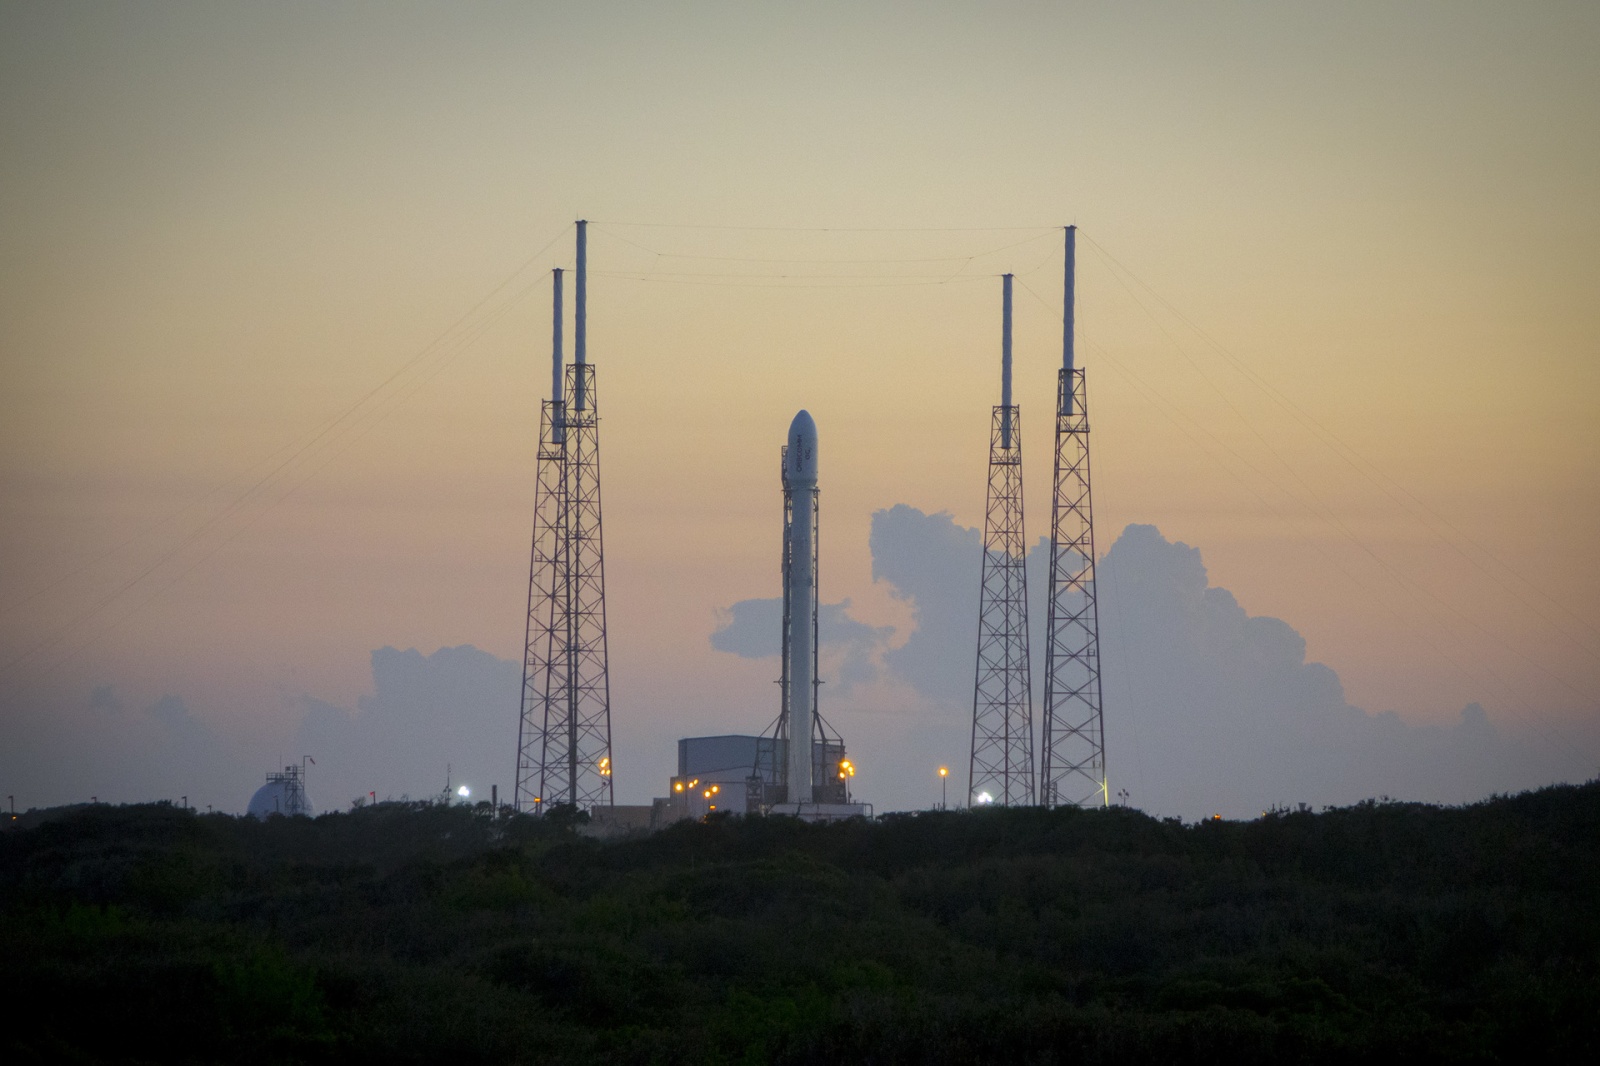 [Запуск и посадка успешны] Этой ночью SpaceX впервые попытается посадить первую ступень ракеты Falcon 9 на сушу - 1